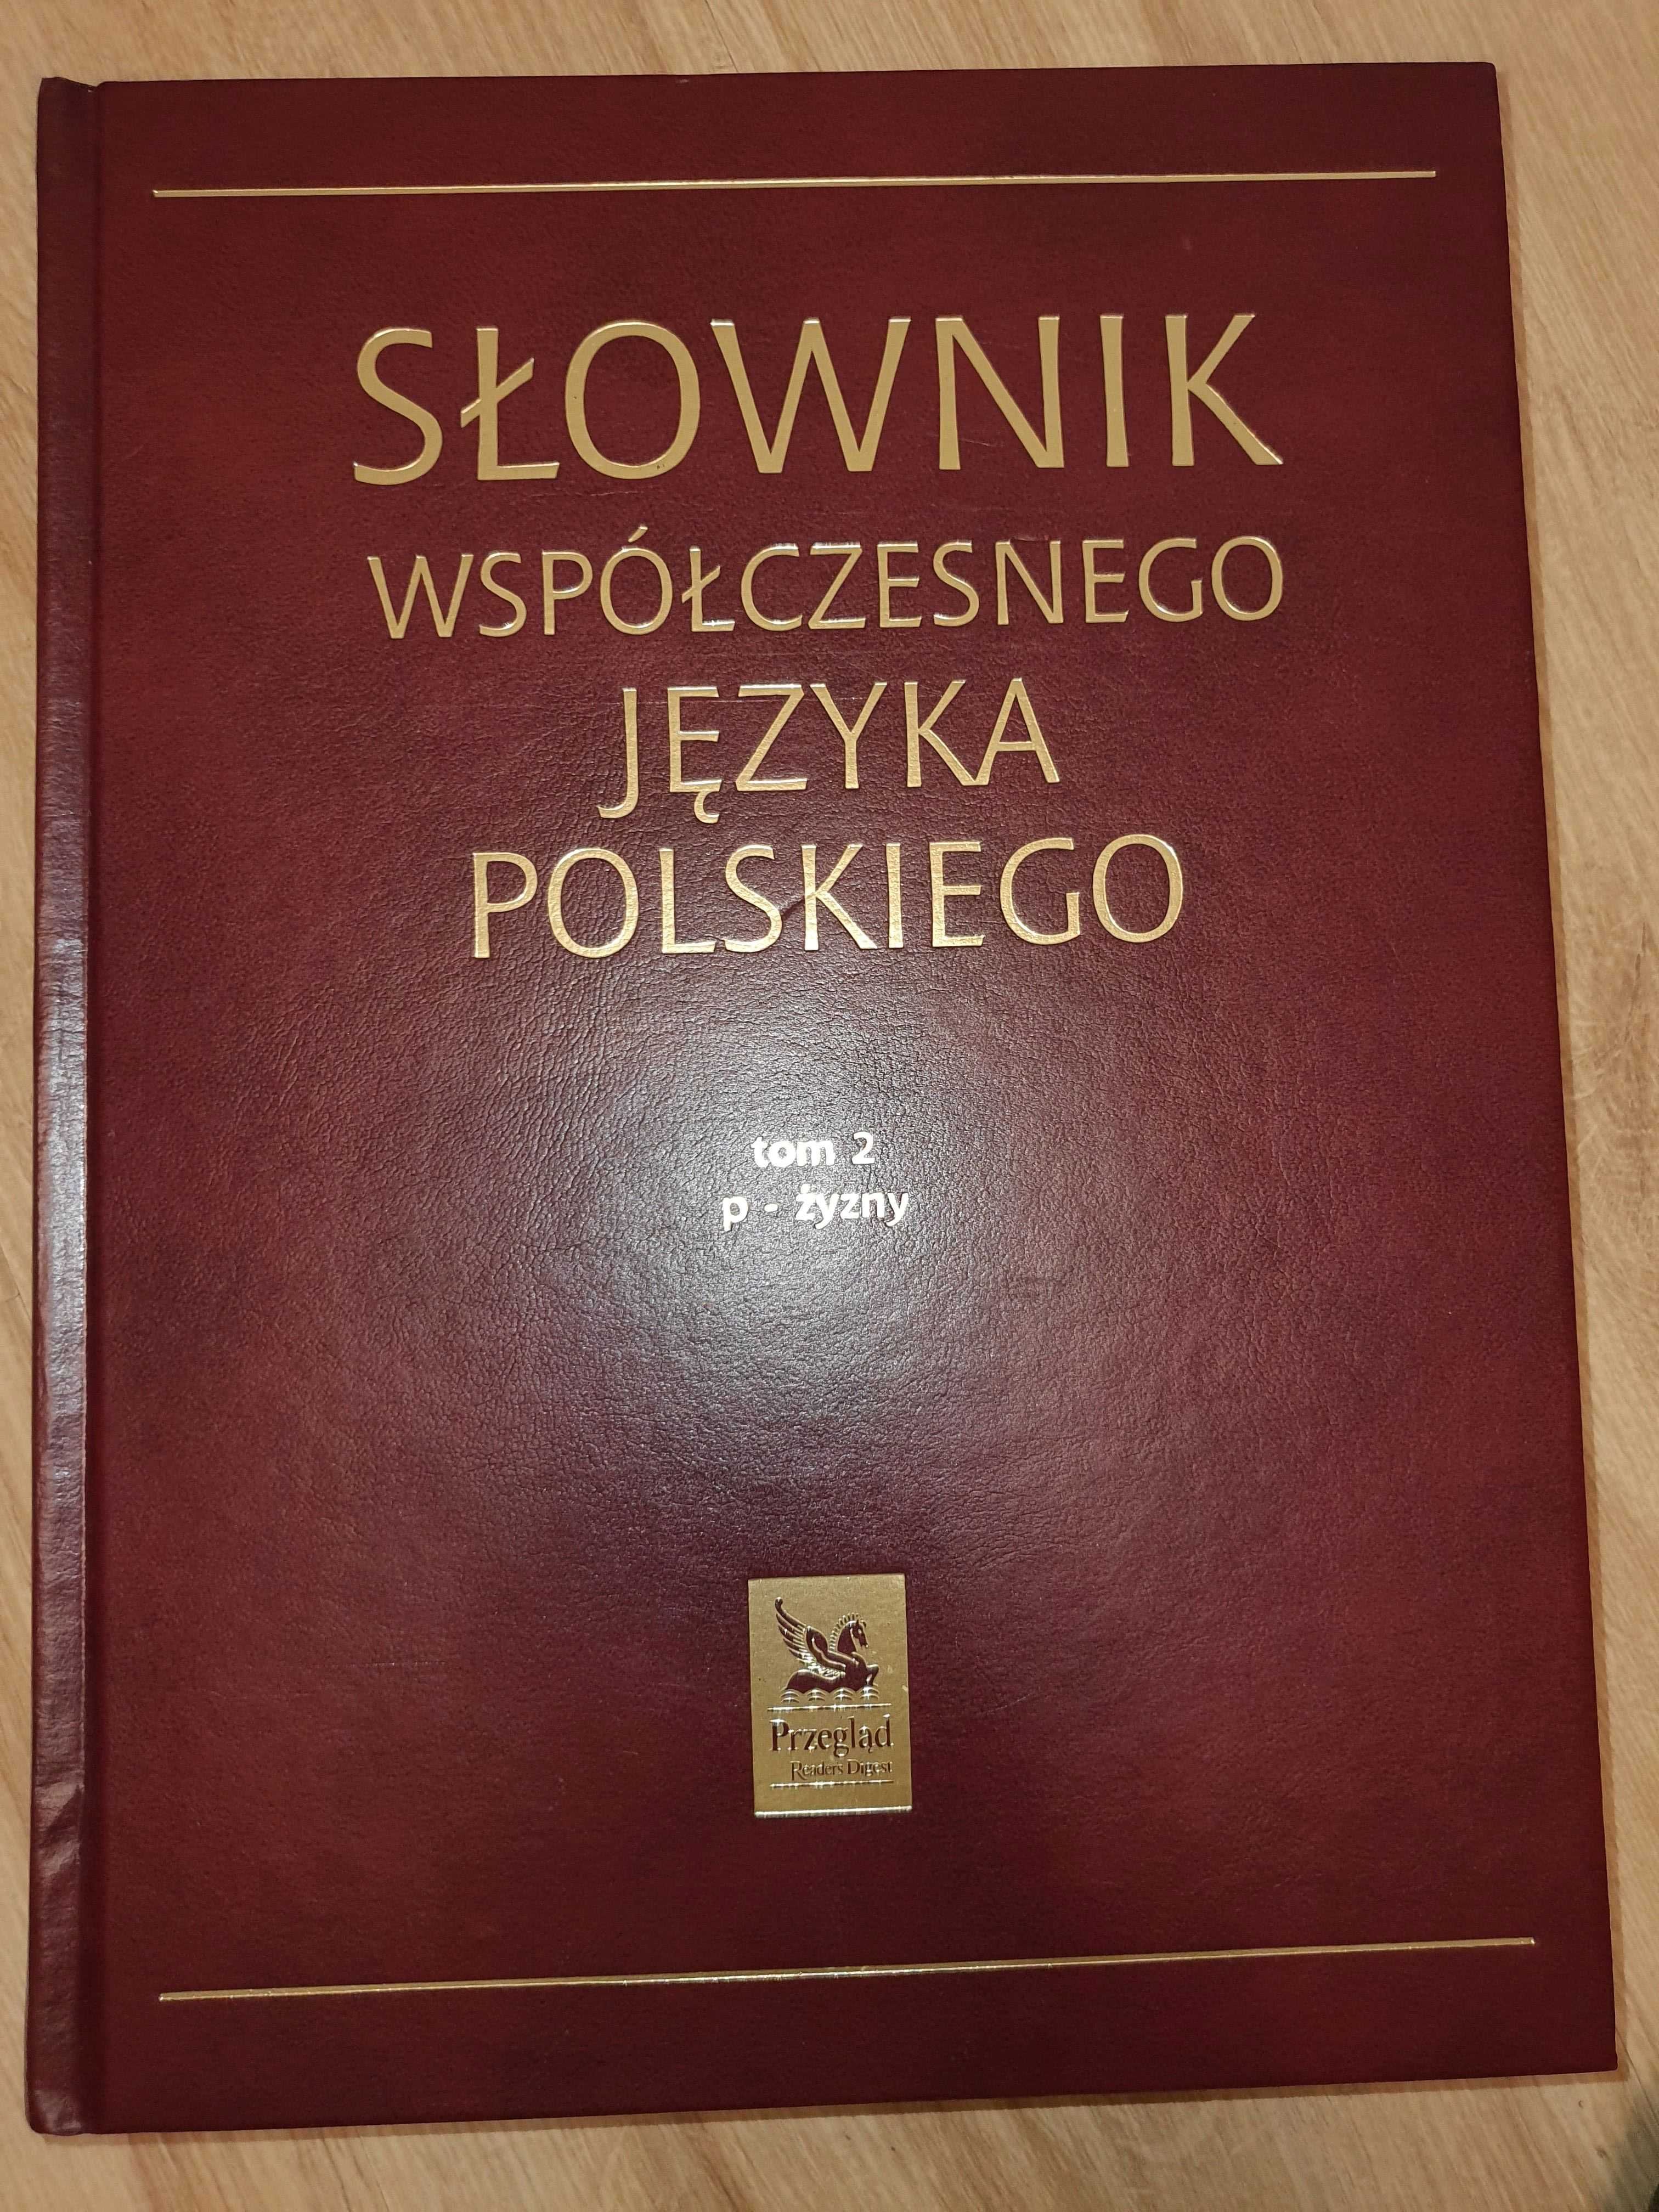 Słownik współczesnego języka polskiego 2 tomy! Polecam!